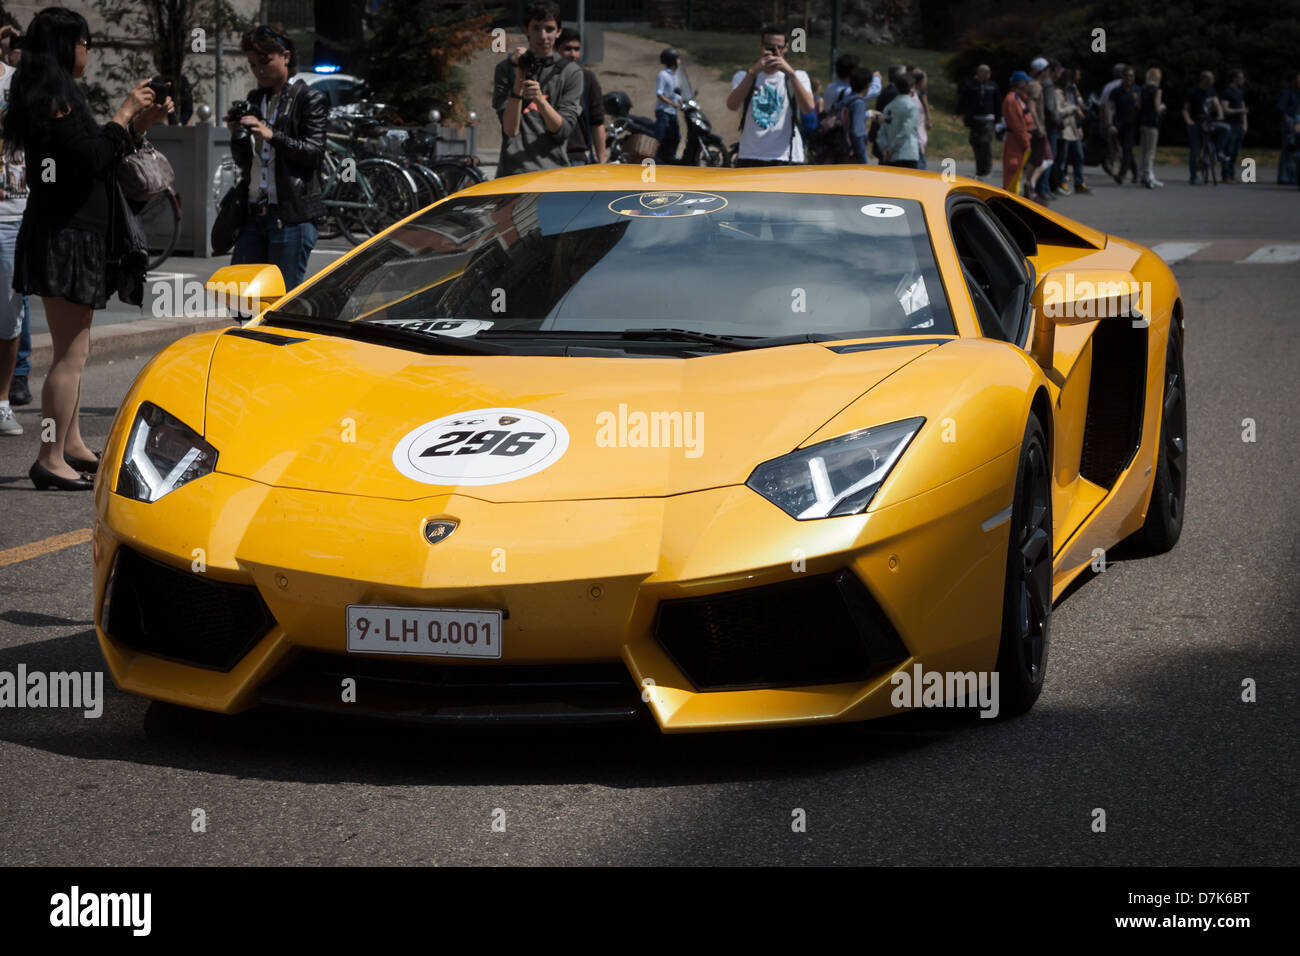 Milán, Italia - 8 de mayo de 2013: Reunión internacional de autos Lamborghini en Milán Foto de stock